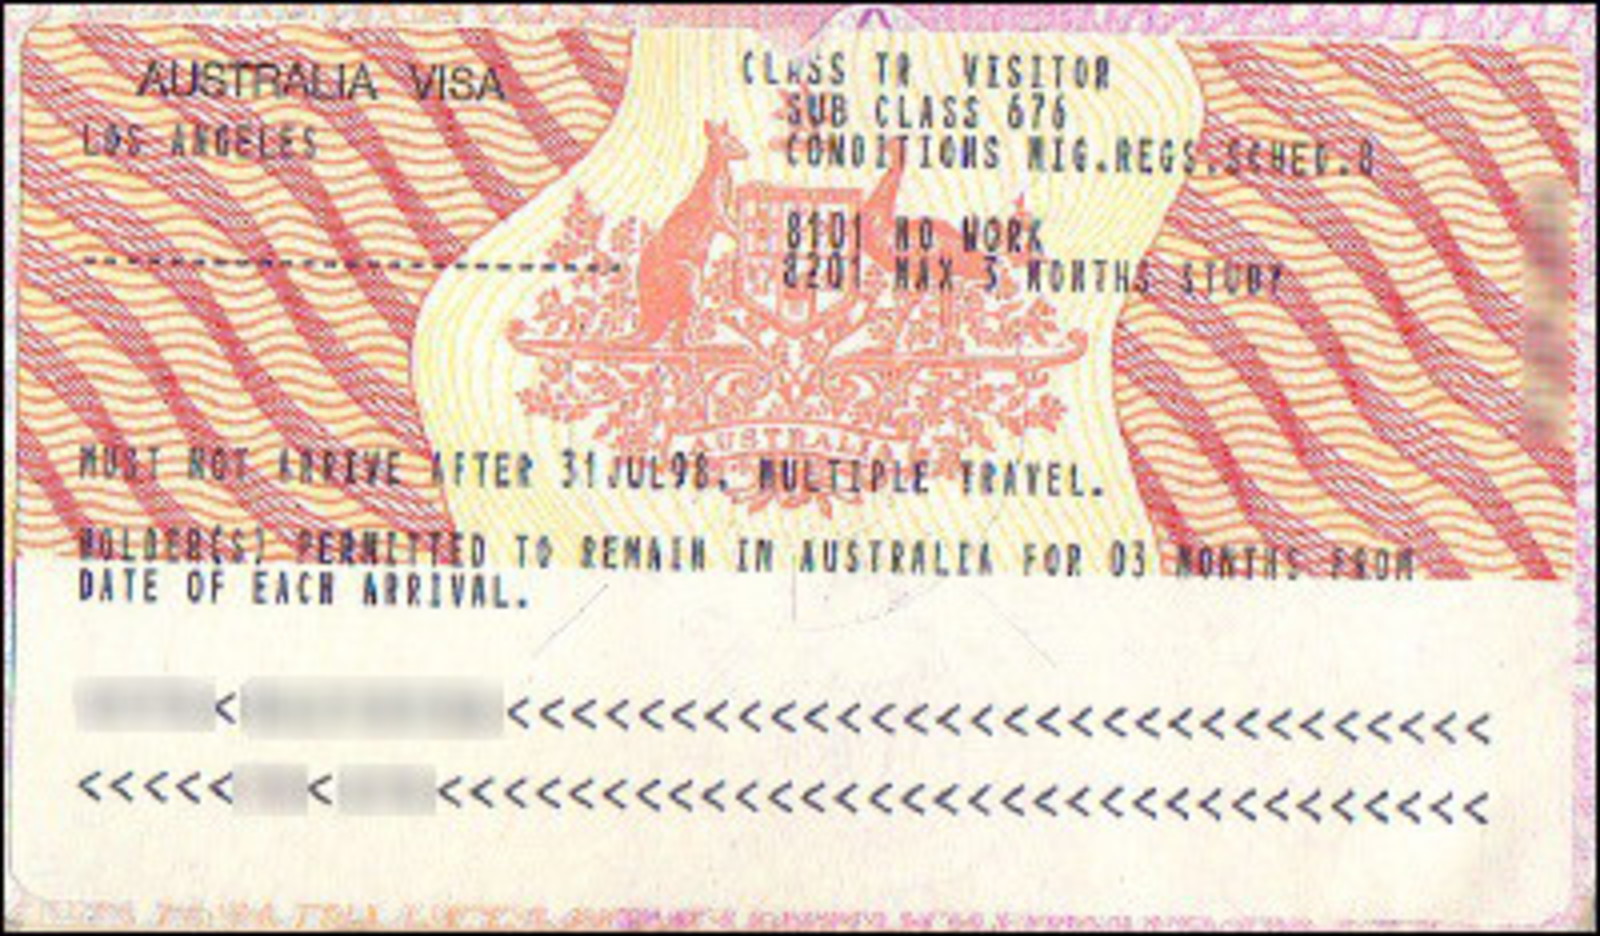 tourist visa australia period